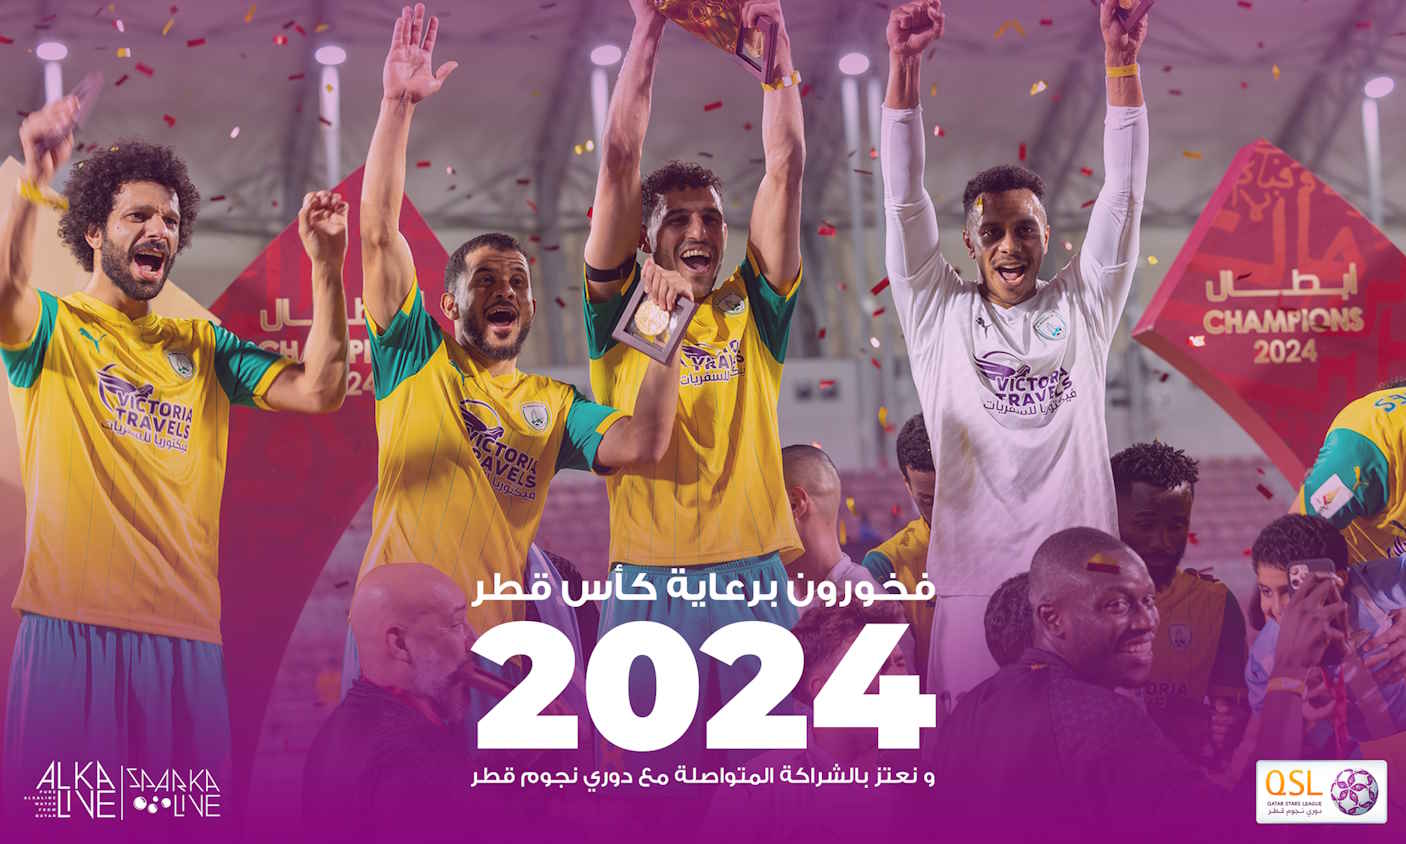 ألكالايف الراعي الرسمي لكأس قطر 2024 بالتعاون مع دوري نجوم قطر